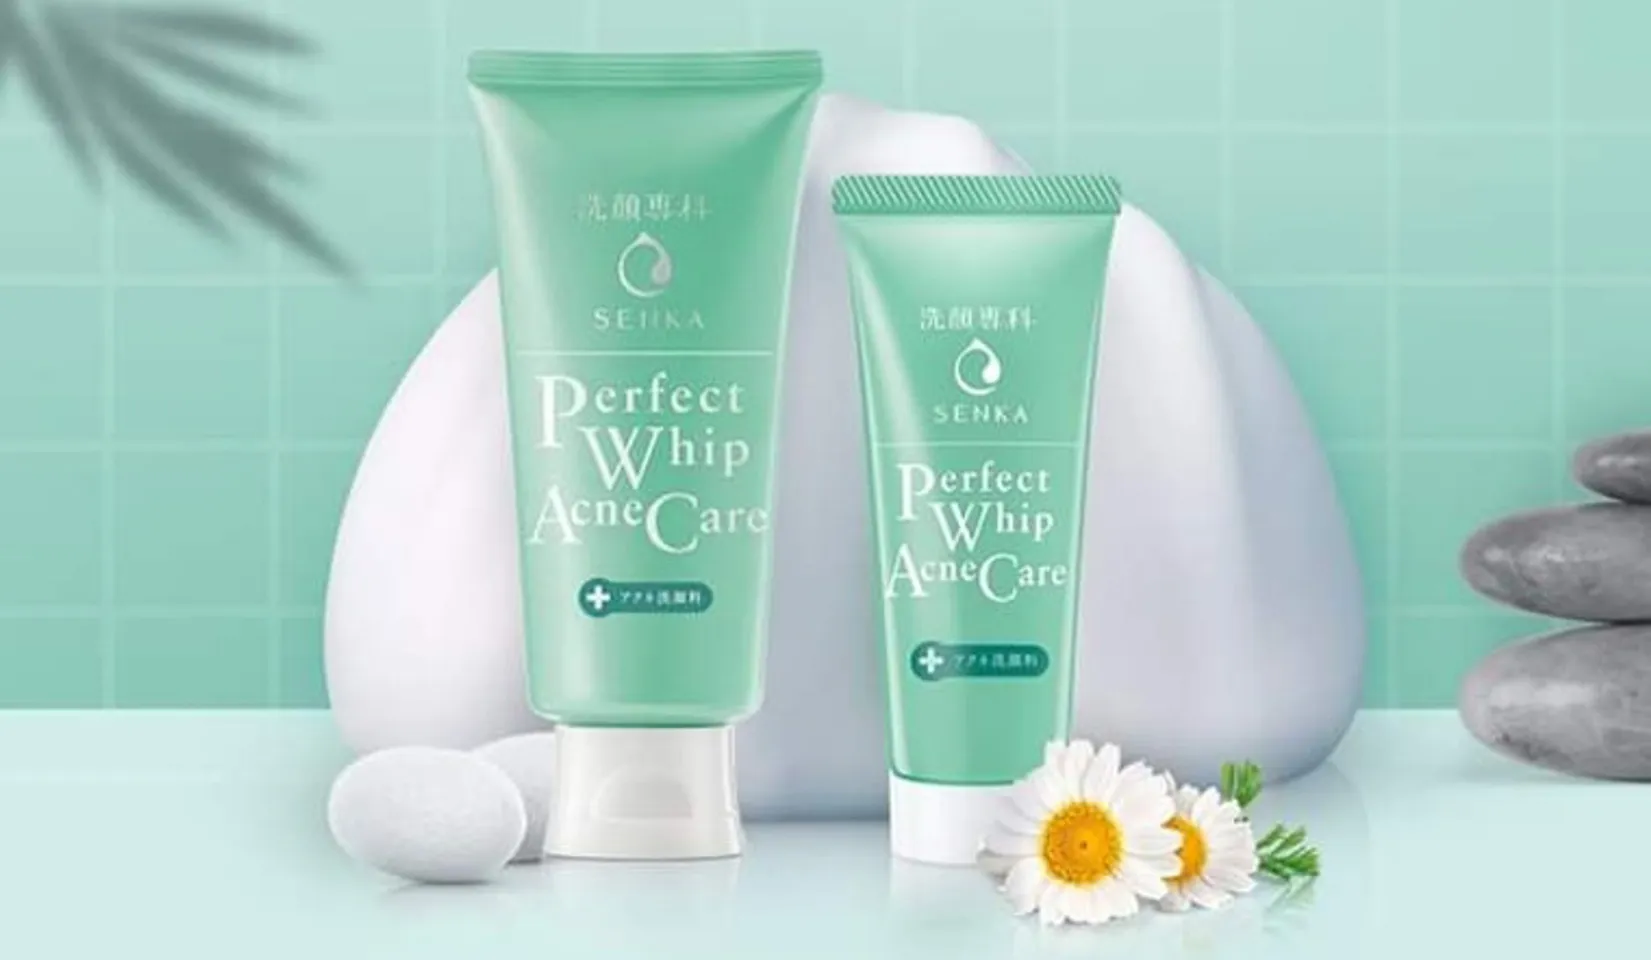 Sữa rửa mặt Senka Perfect Whip Acne Care xanh lá dành cho da mụn